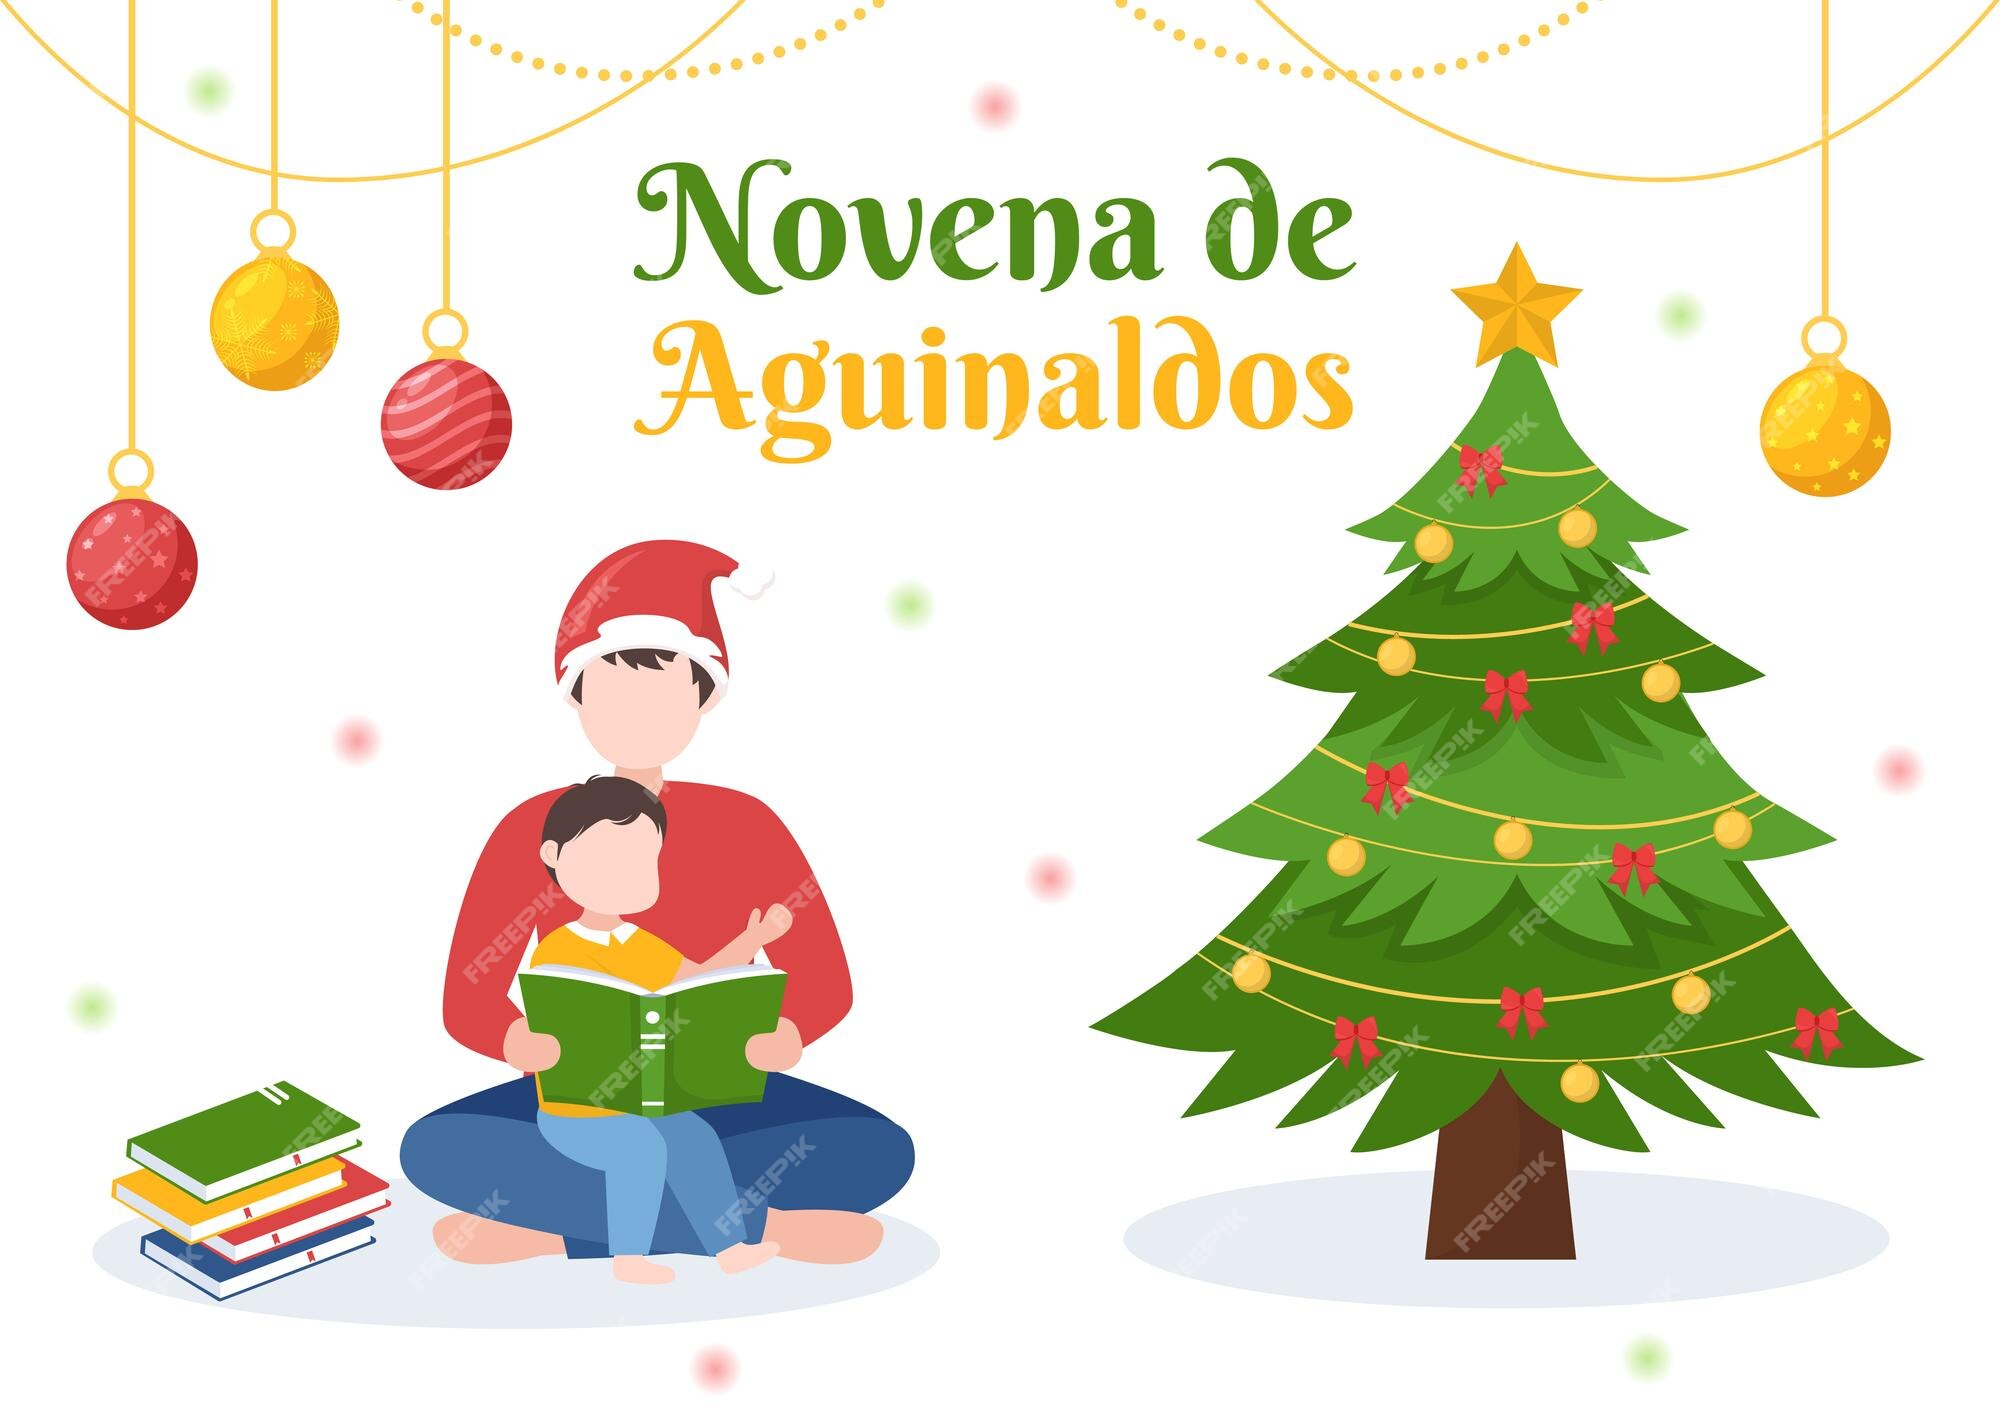 Novena de aguinaldos tradición navideña en colombia para familias en